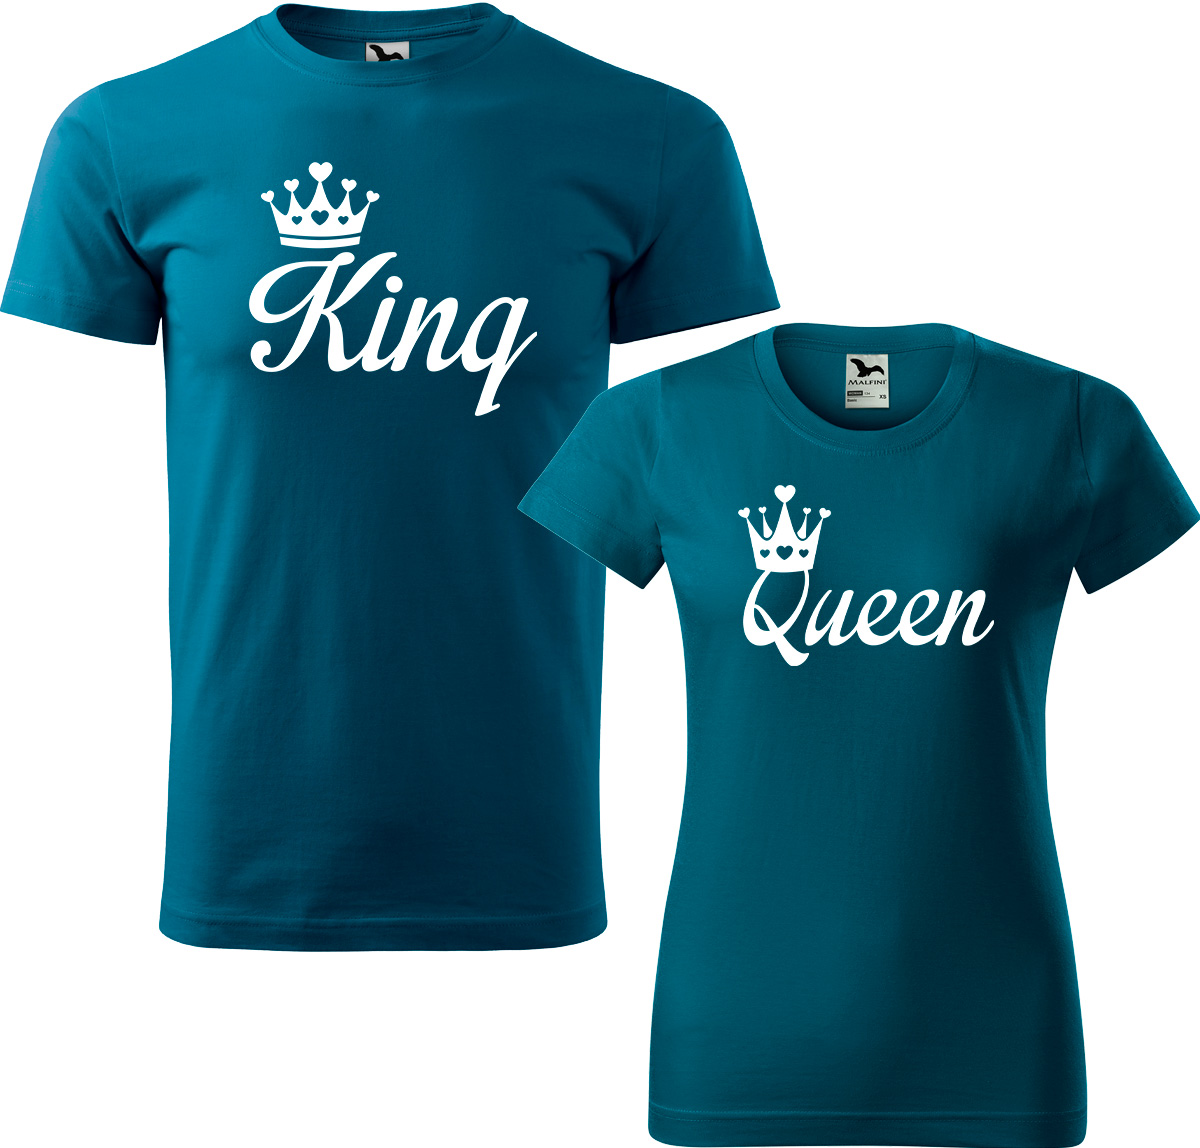 Trička pro páry - King a queen Barva: Petrolejová (93), Velikost dámské tričko: M, Velikost pánské tričko: M